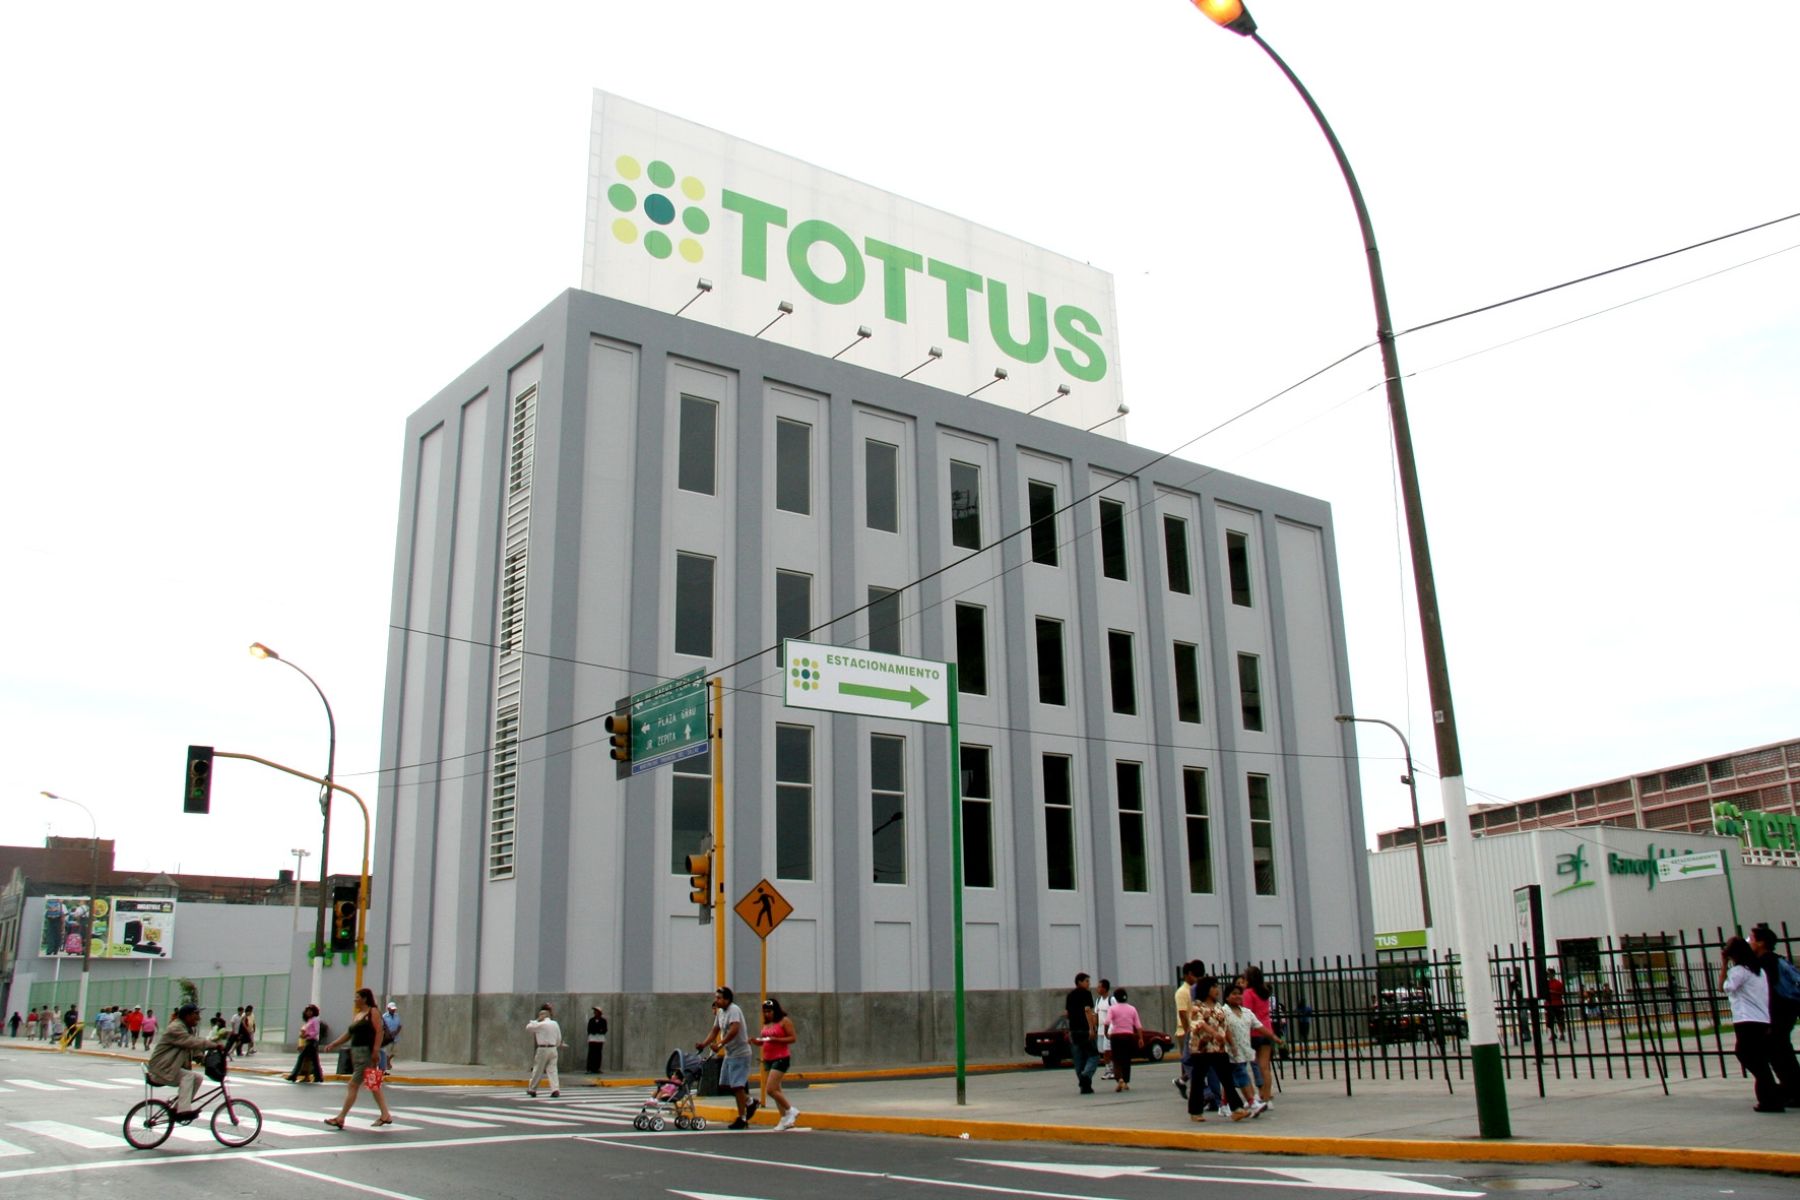 Hipermercado Tottus inaugurado hoy en la avenida Sáenz Peña en el Callao. Foto: ANDINA/ difusión